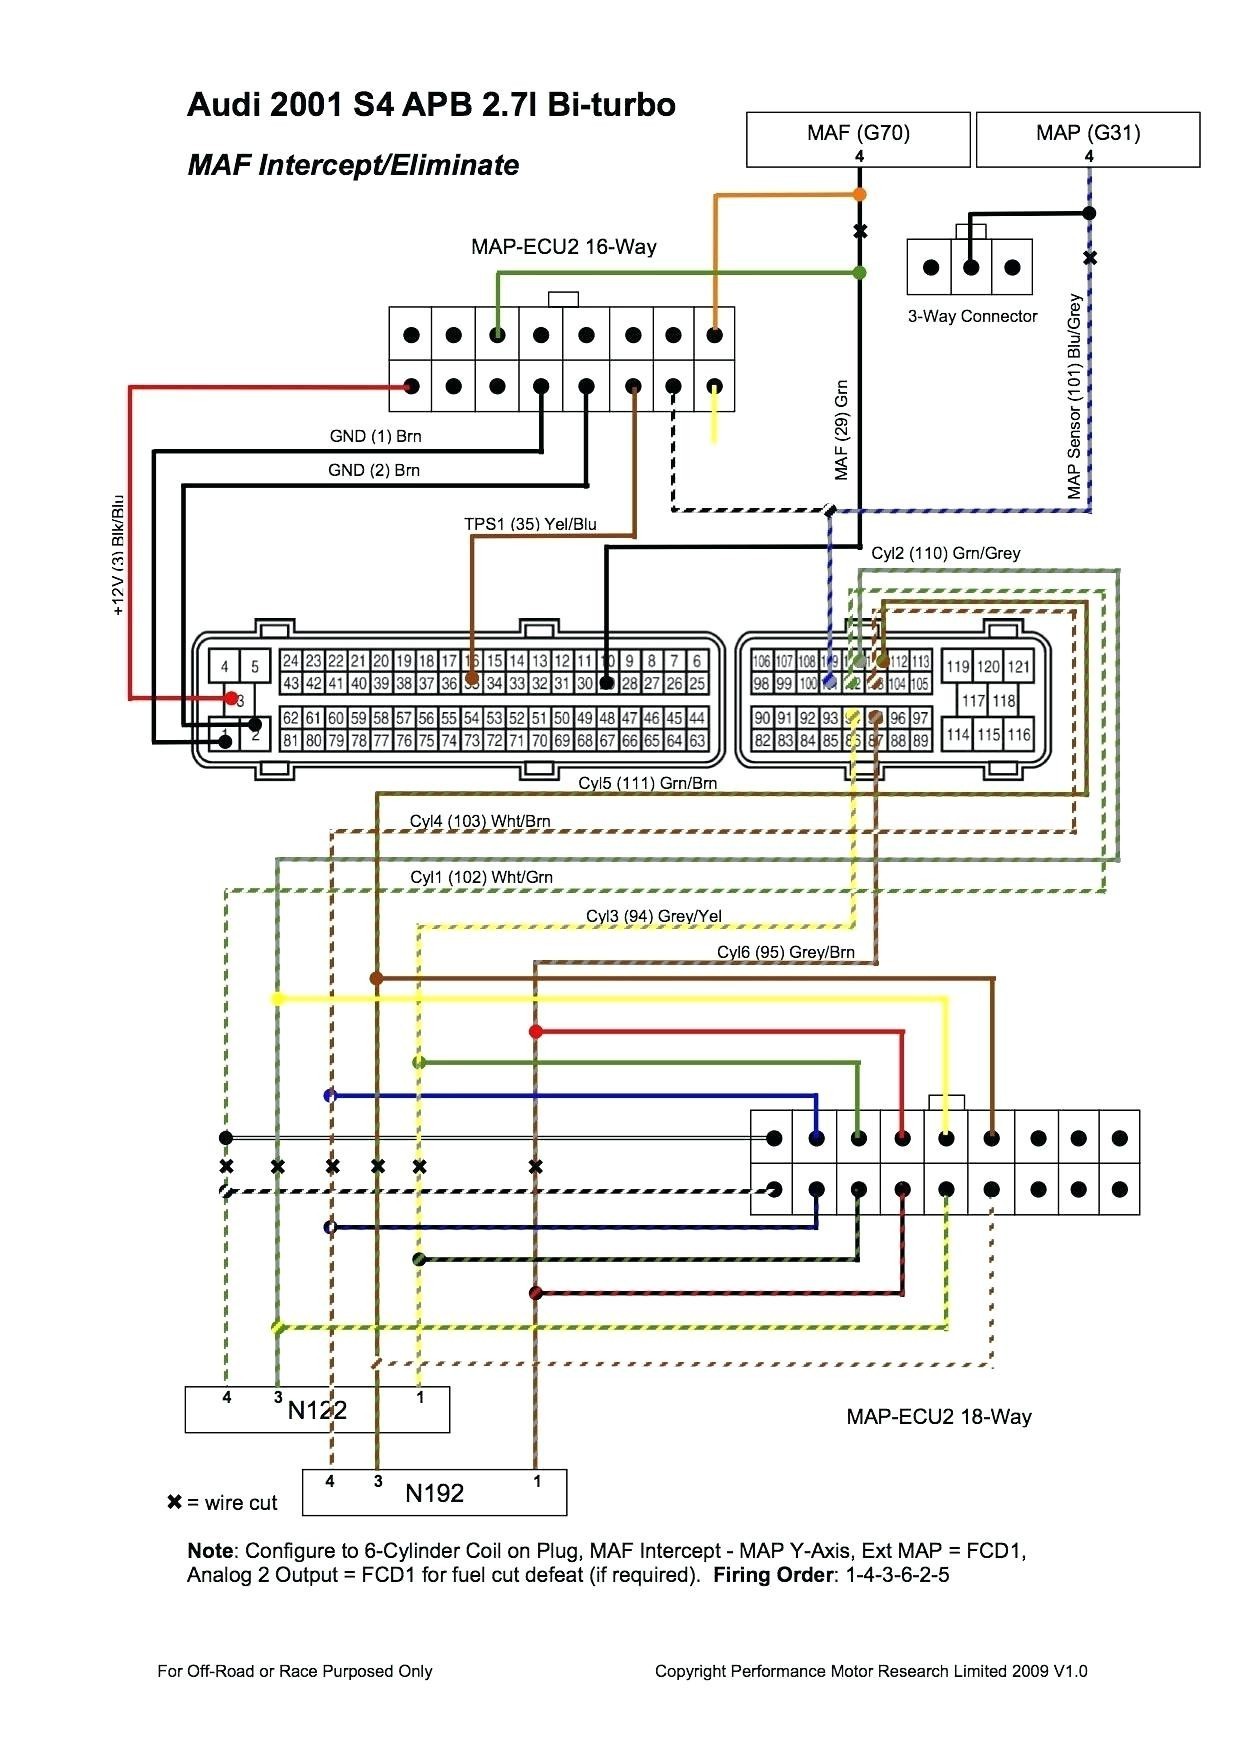 1996 toyota Tercel Engine Diagram 96 Dodge Neon Radio Wiring Data Schematics Wiring Diagram • Of 1996 toyota Tercel Engine Diagram